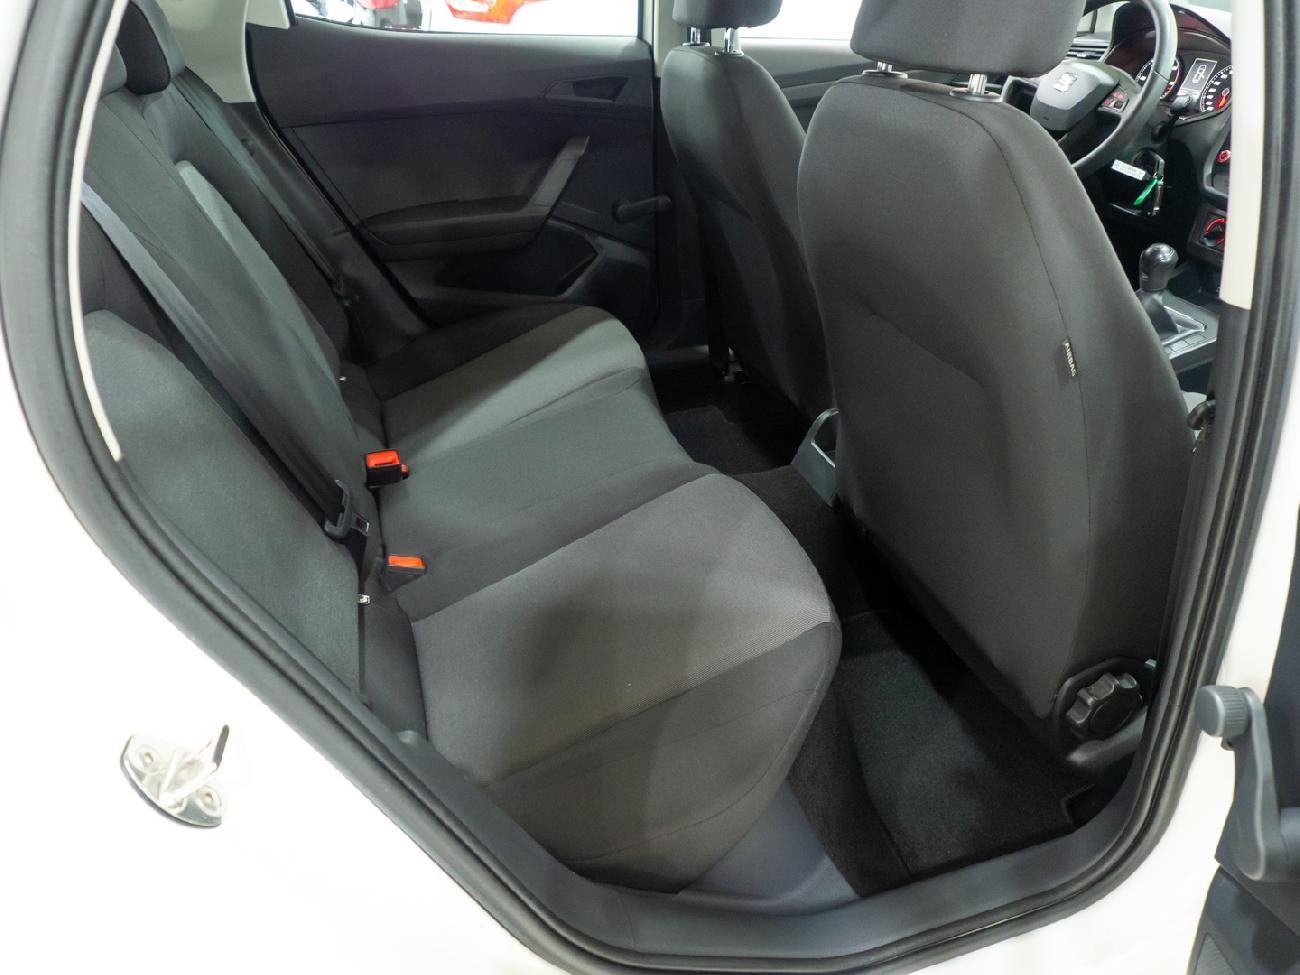 2019 Seat Ibiza Ibiza 1.6 TDI (80CV) REFERENCE PLUS coche de segunda mano